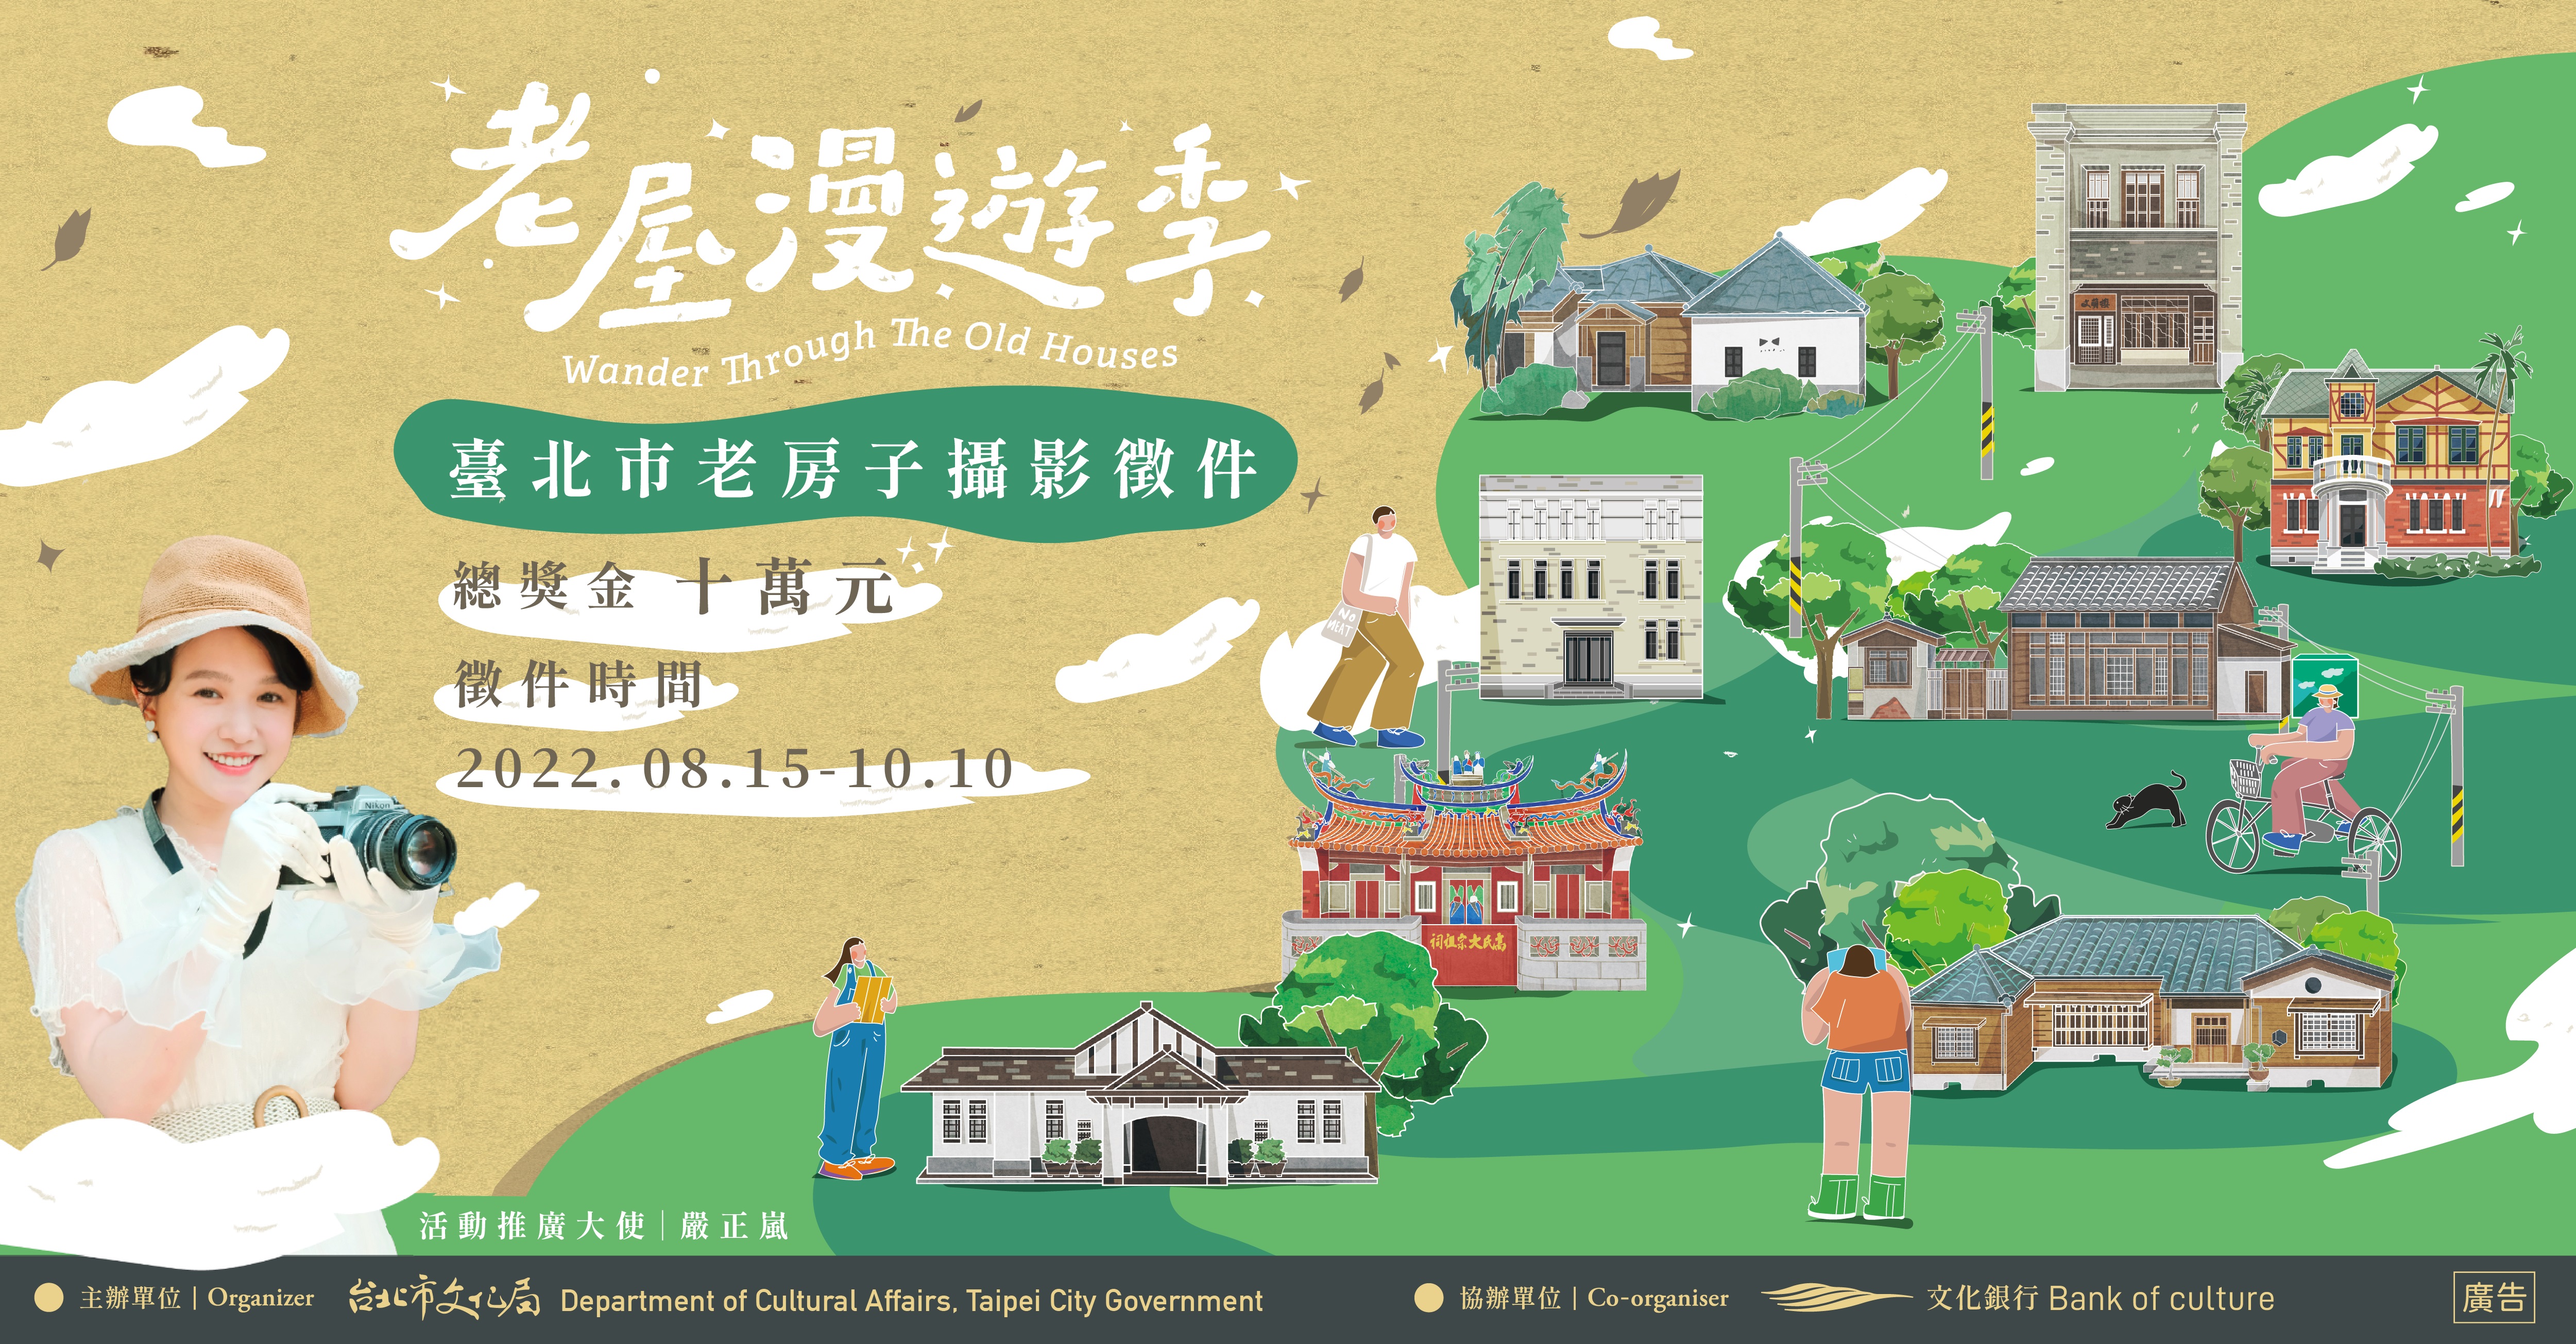 「臺北市老房子攝影徵件」海報